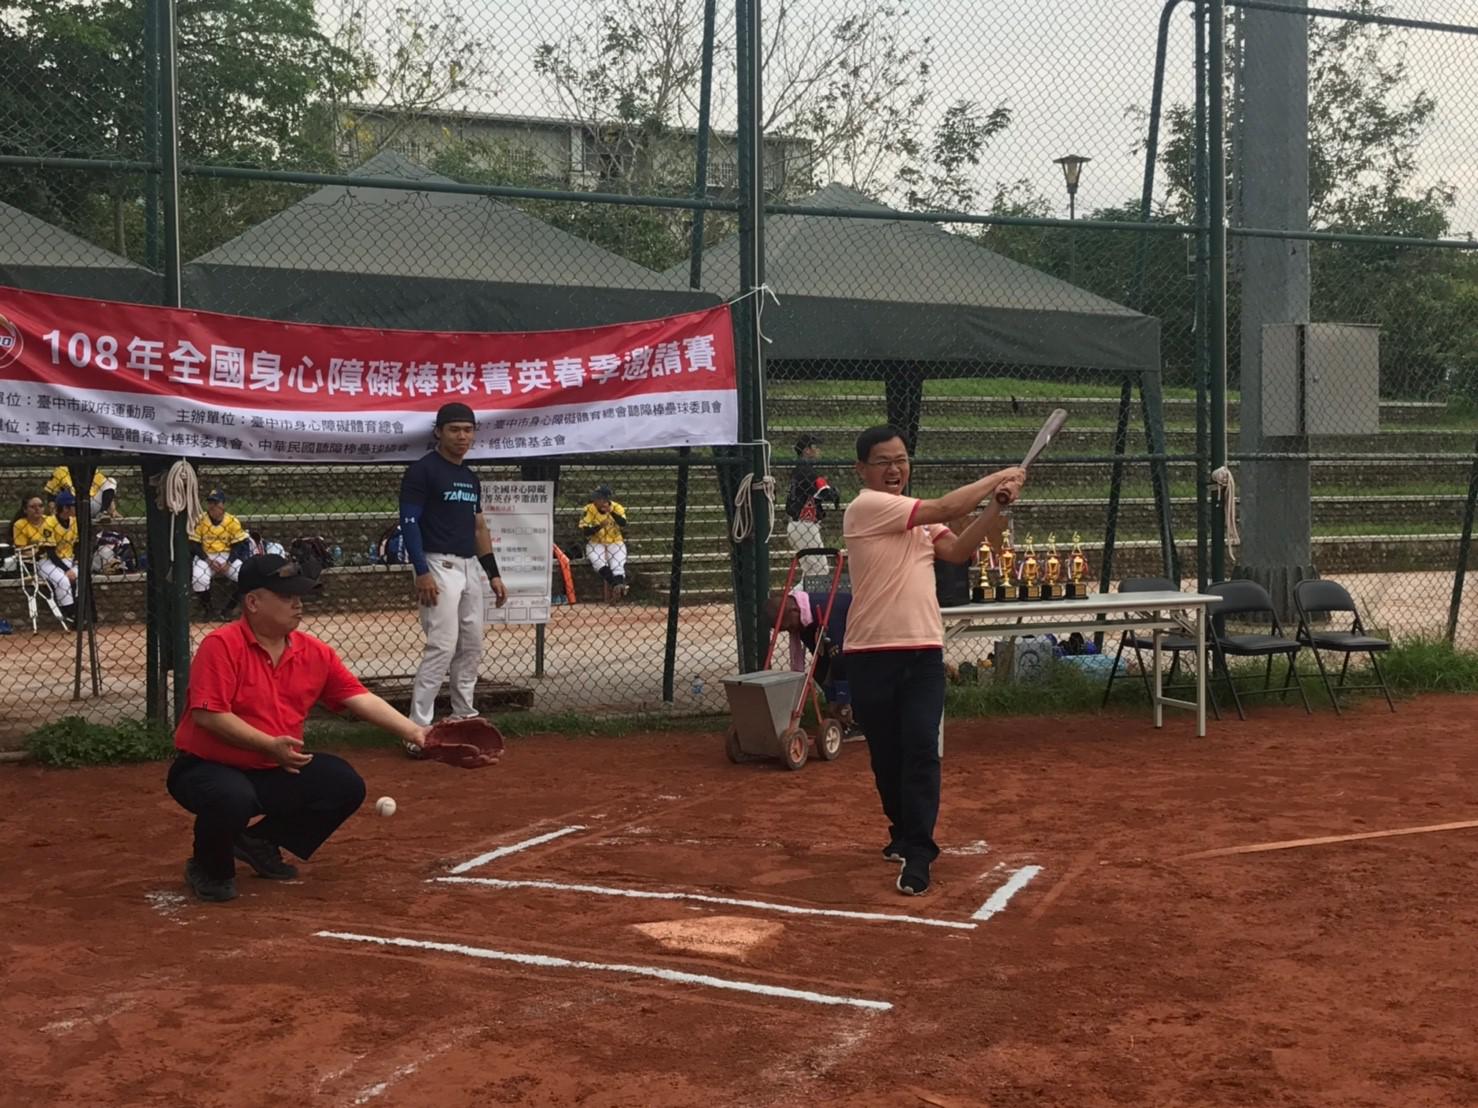 2019.05.05_108年全國身心障礙棒球菁英春季邀請賽，共3張圖片